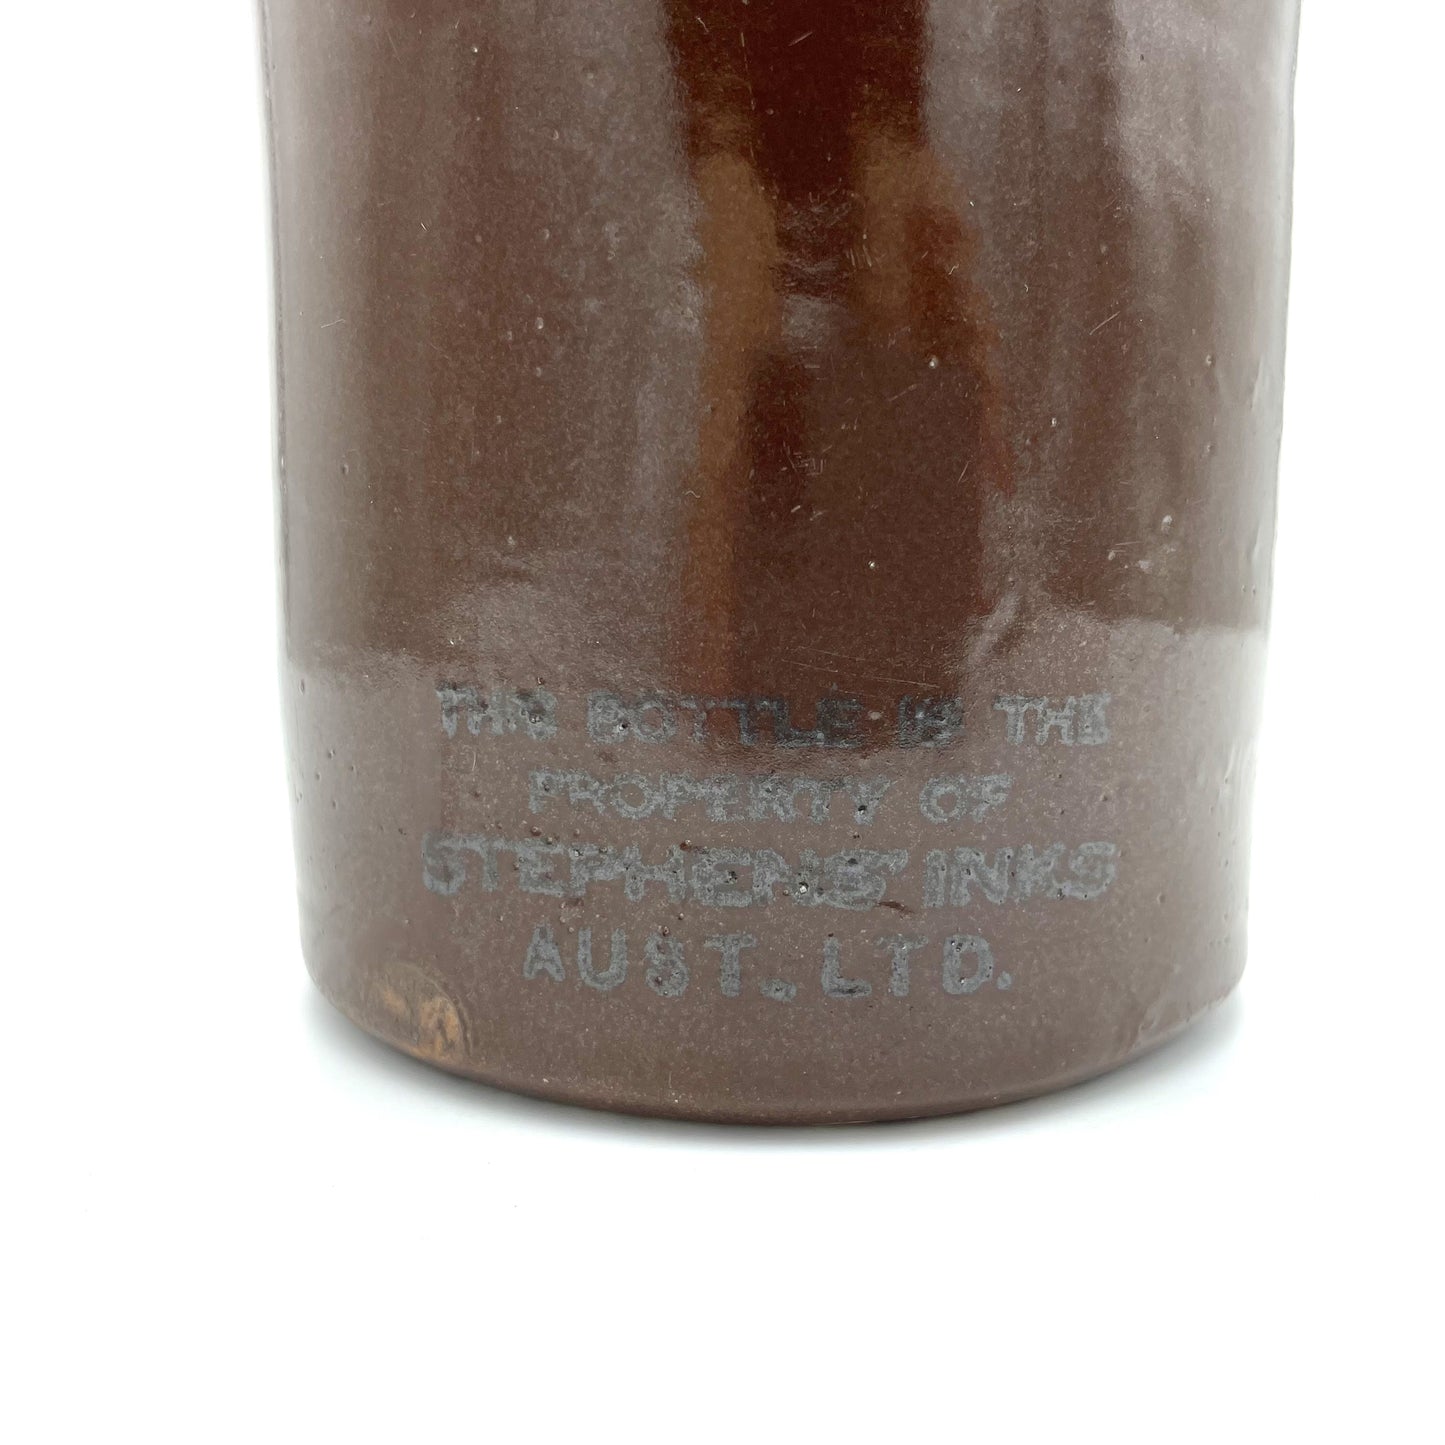 Vintage Stephens Ink Australia Bottle - 24cm